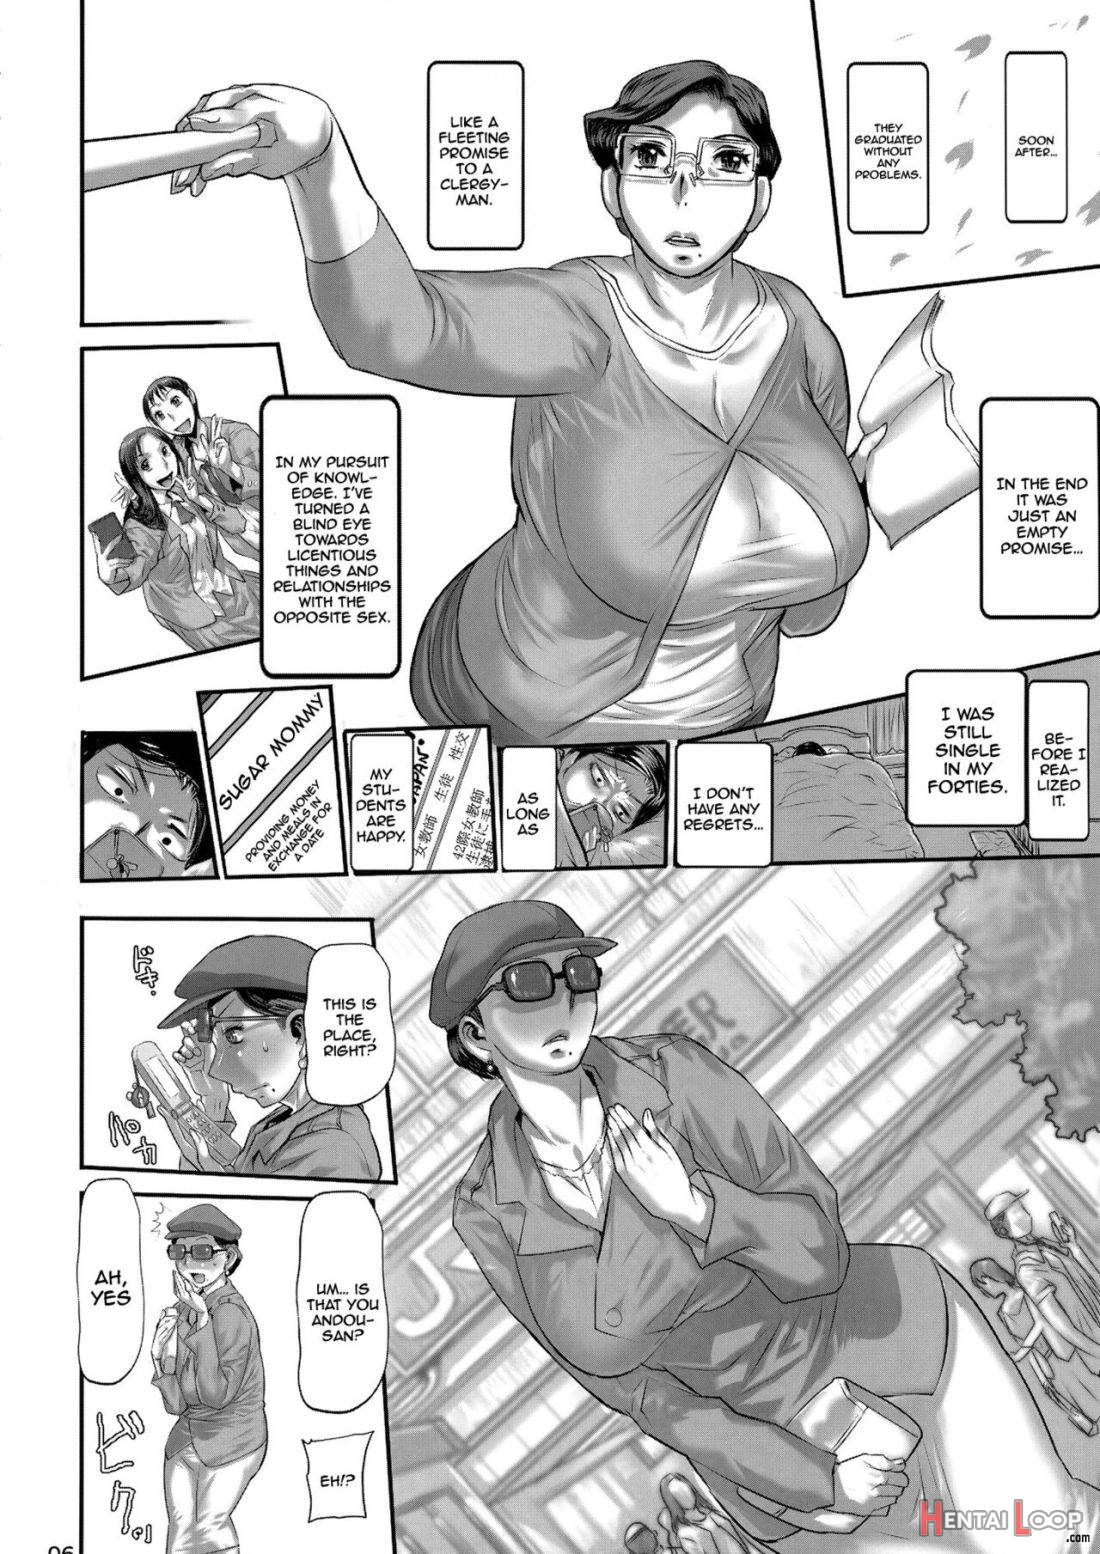 Yosoji onshi wa o to me-mori page 5